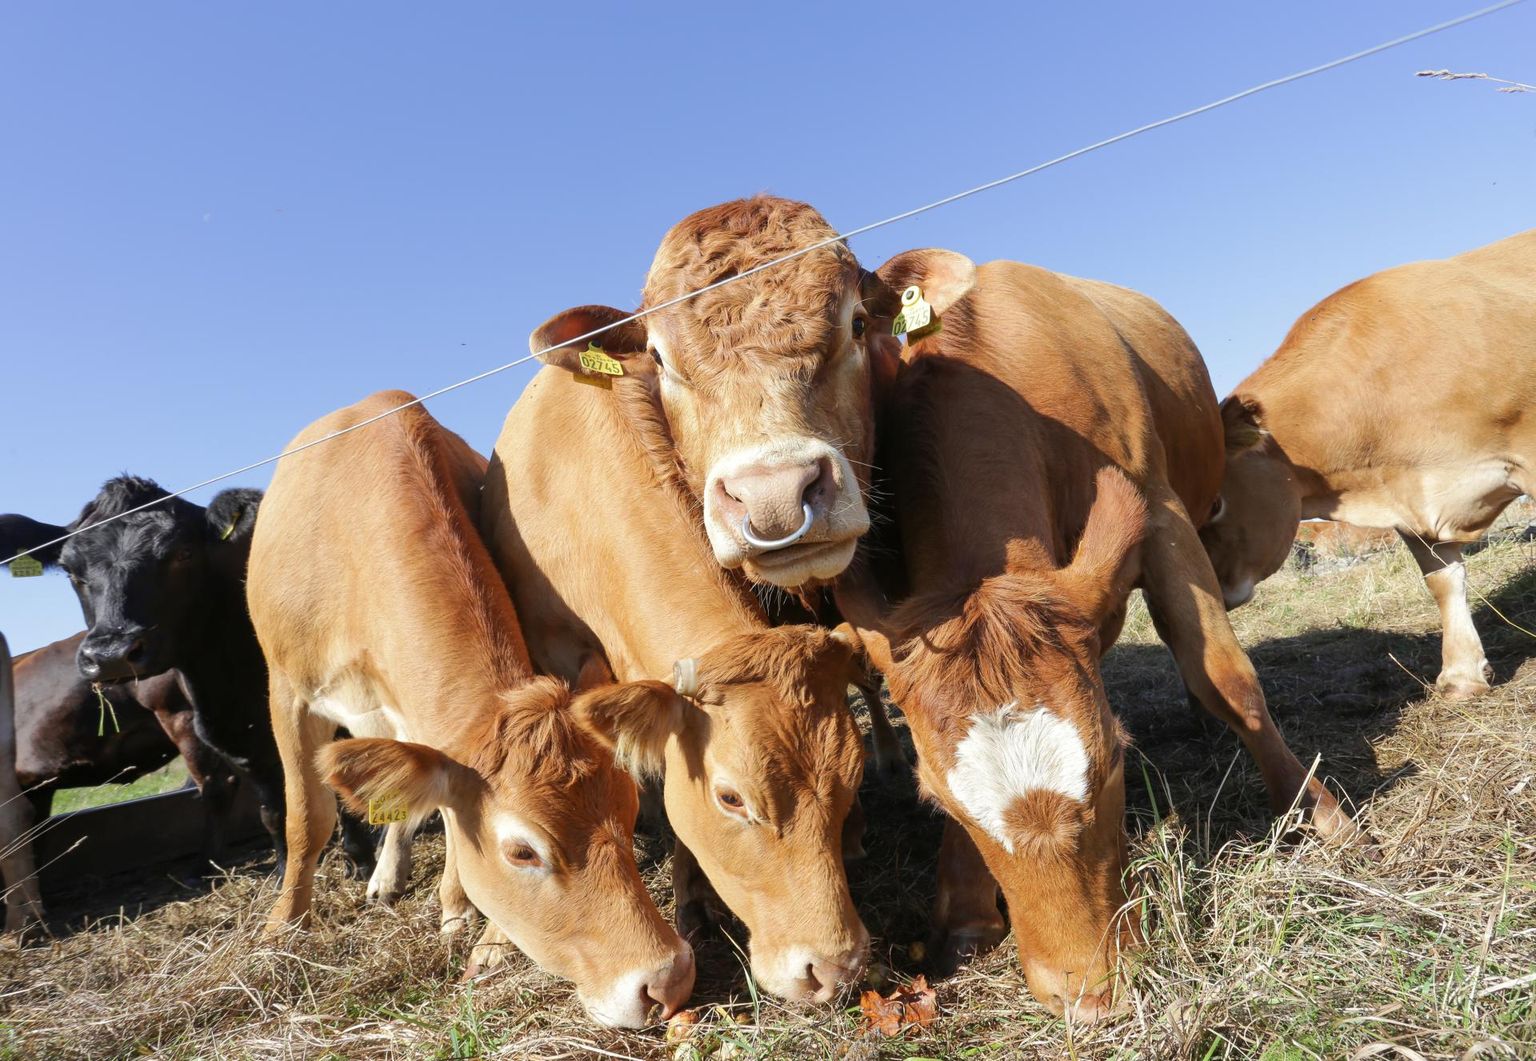 Eesti liha- ja tõuloomade müük välismaale on kängunud ning hinnadki langenud. Õnneks saab loomad varsti karjamaale lasta ja neid edasi kasvatada.